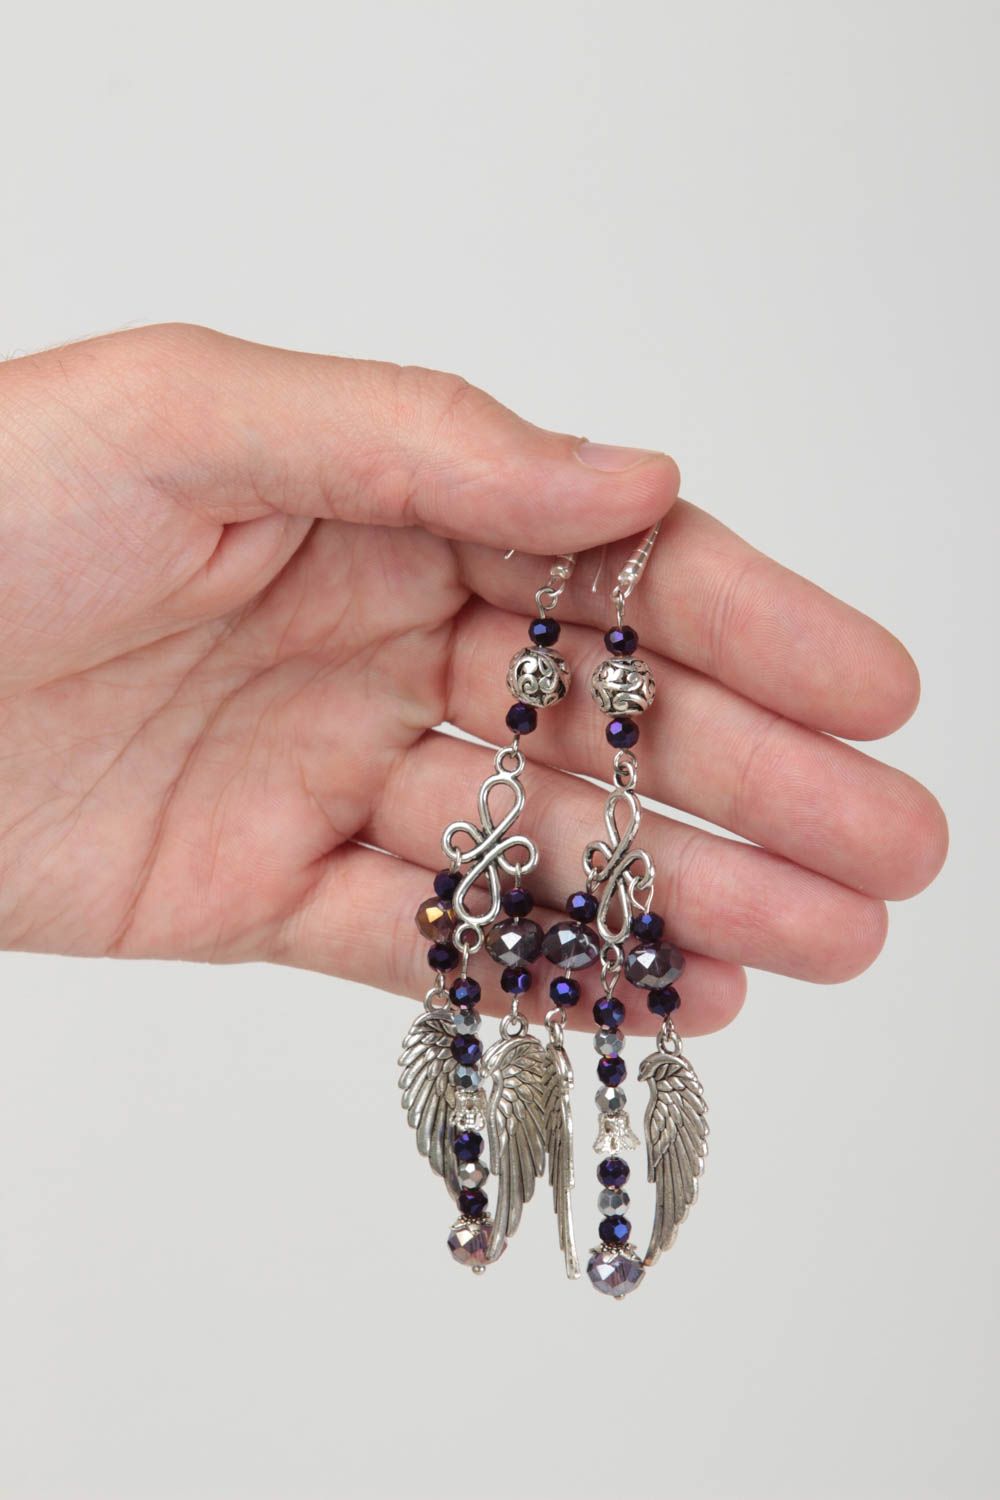 Unusual handmade metal earrings crystal earrings with charms designer jewelry photo 5